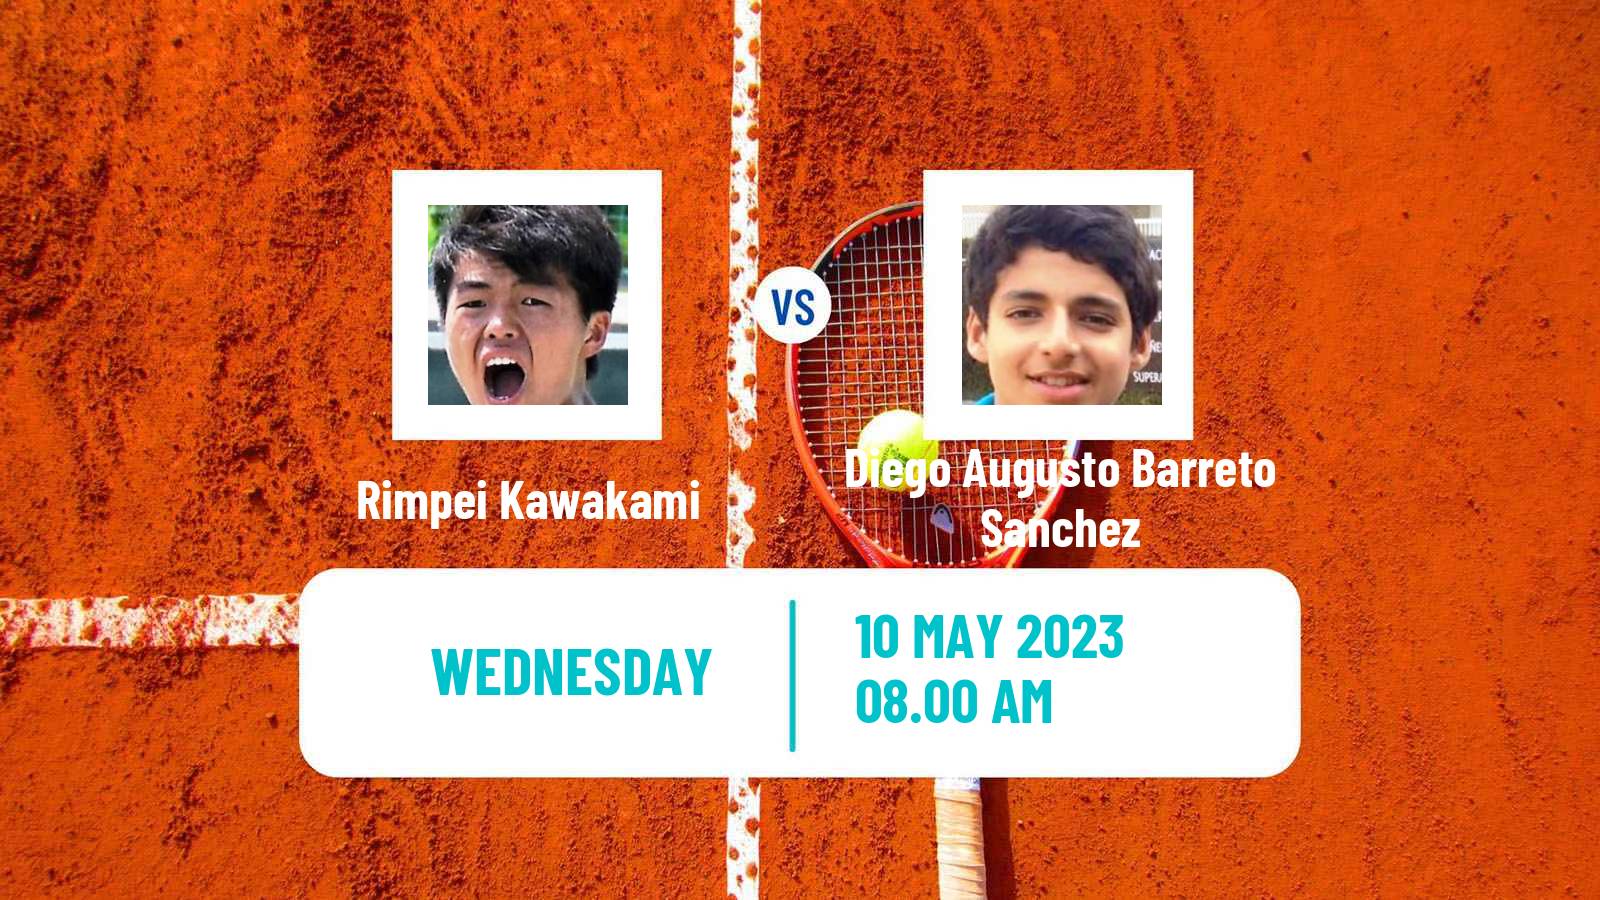 Tennis ITF Tournaments Rimpei Kawakami - Diego Augusto Barreto Sanchez